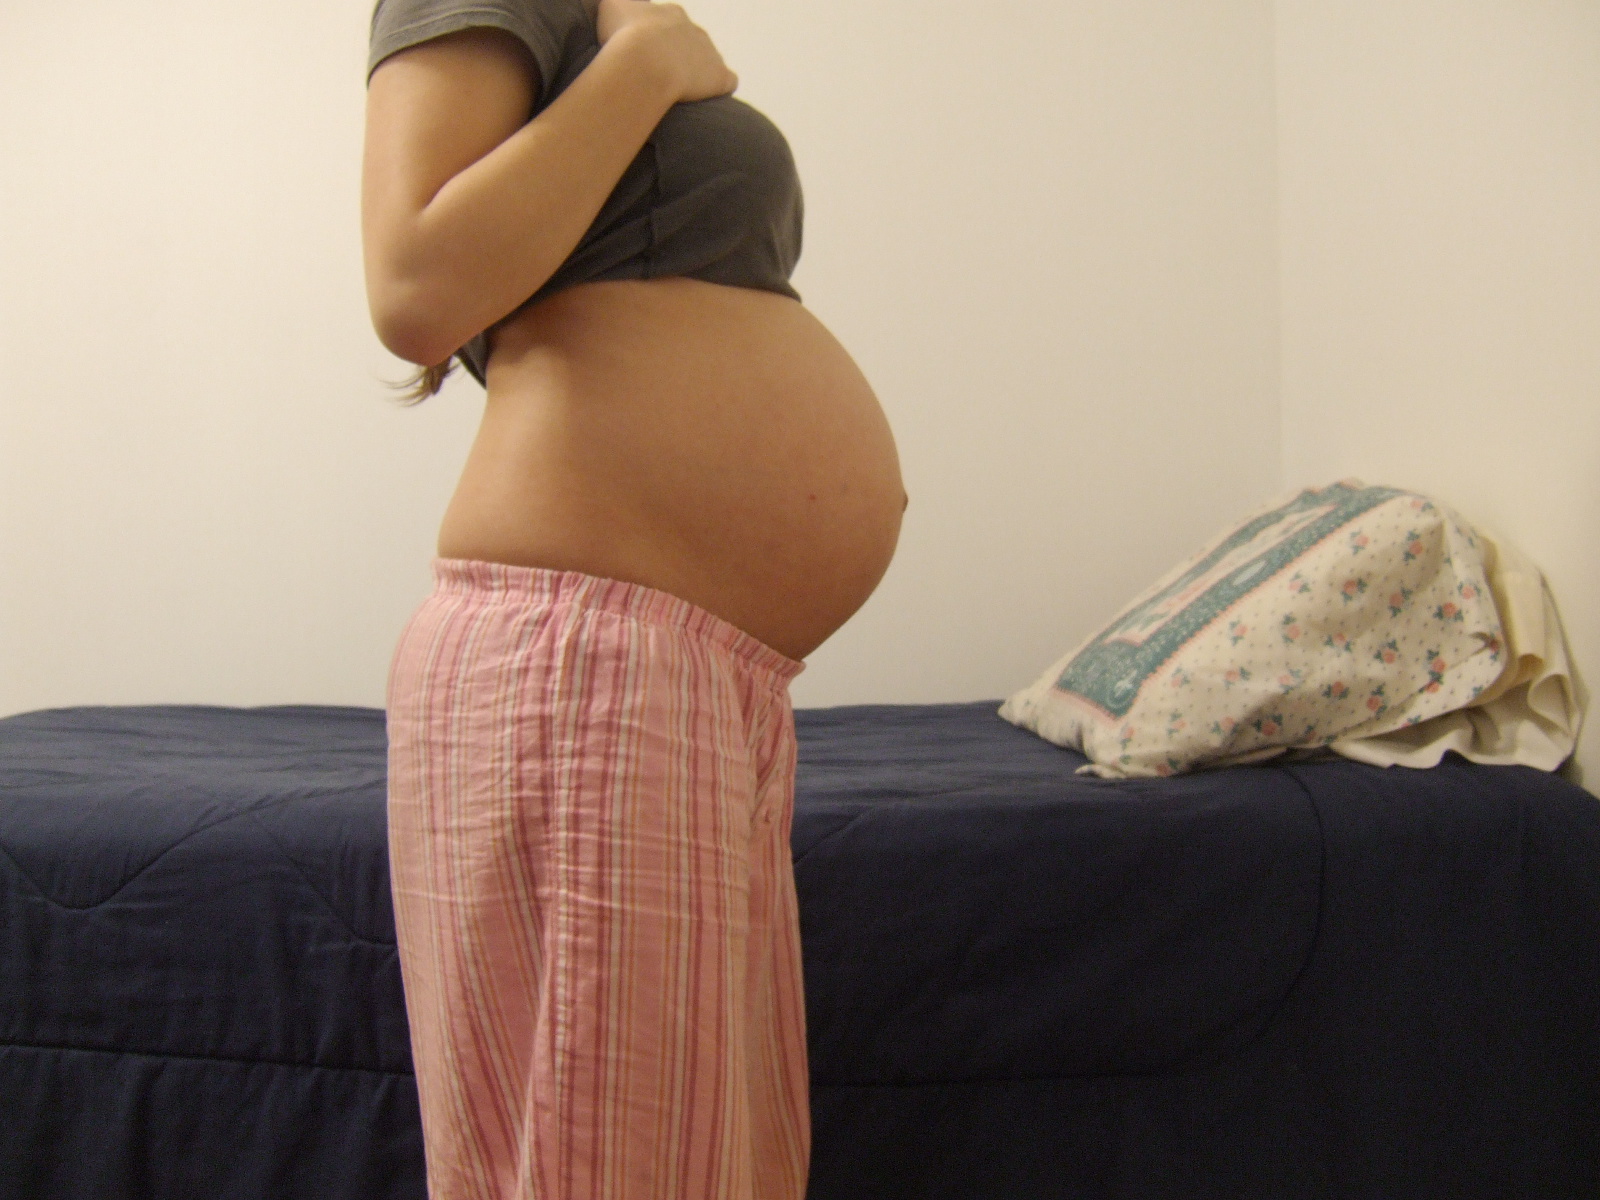 33 недели беременности можно. Живот на 32 неделе беременности. Животик на 32 неделе беременности. 3͓2͓н͓е͓д͓е͓л͓и͓ б͓е͓р͓е͓м͓. Беременные девушки.